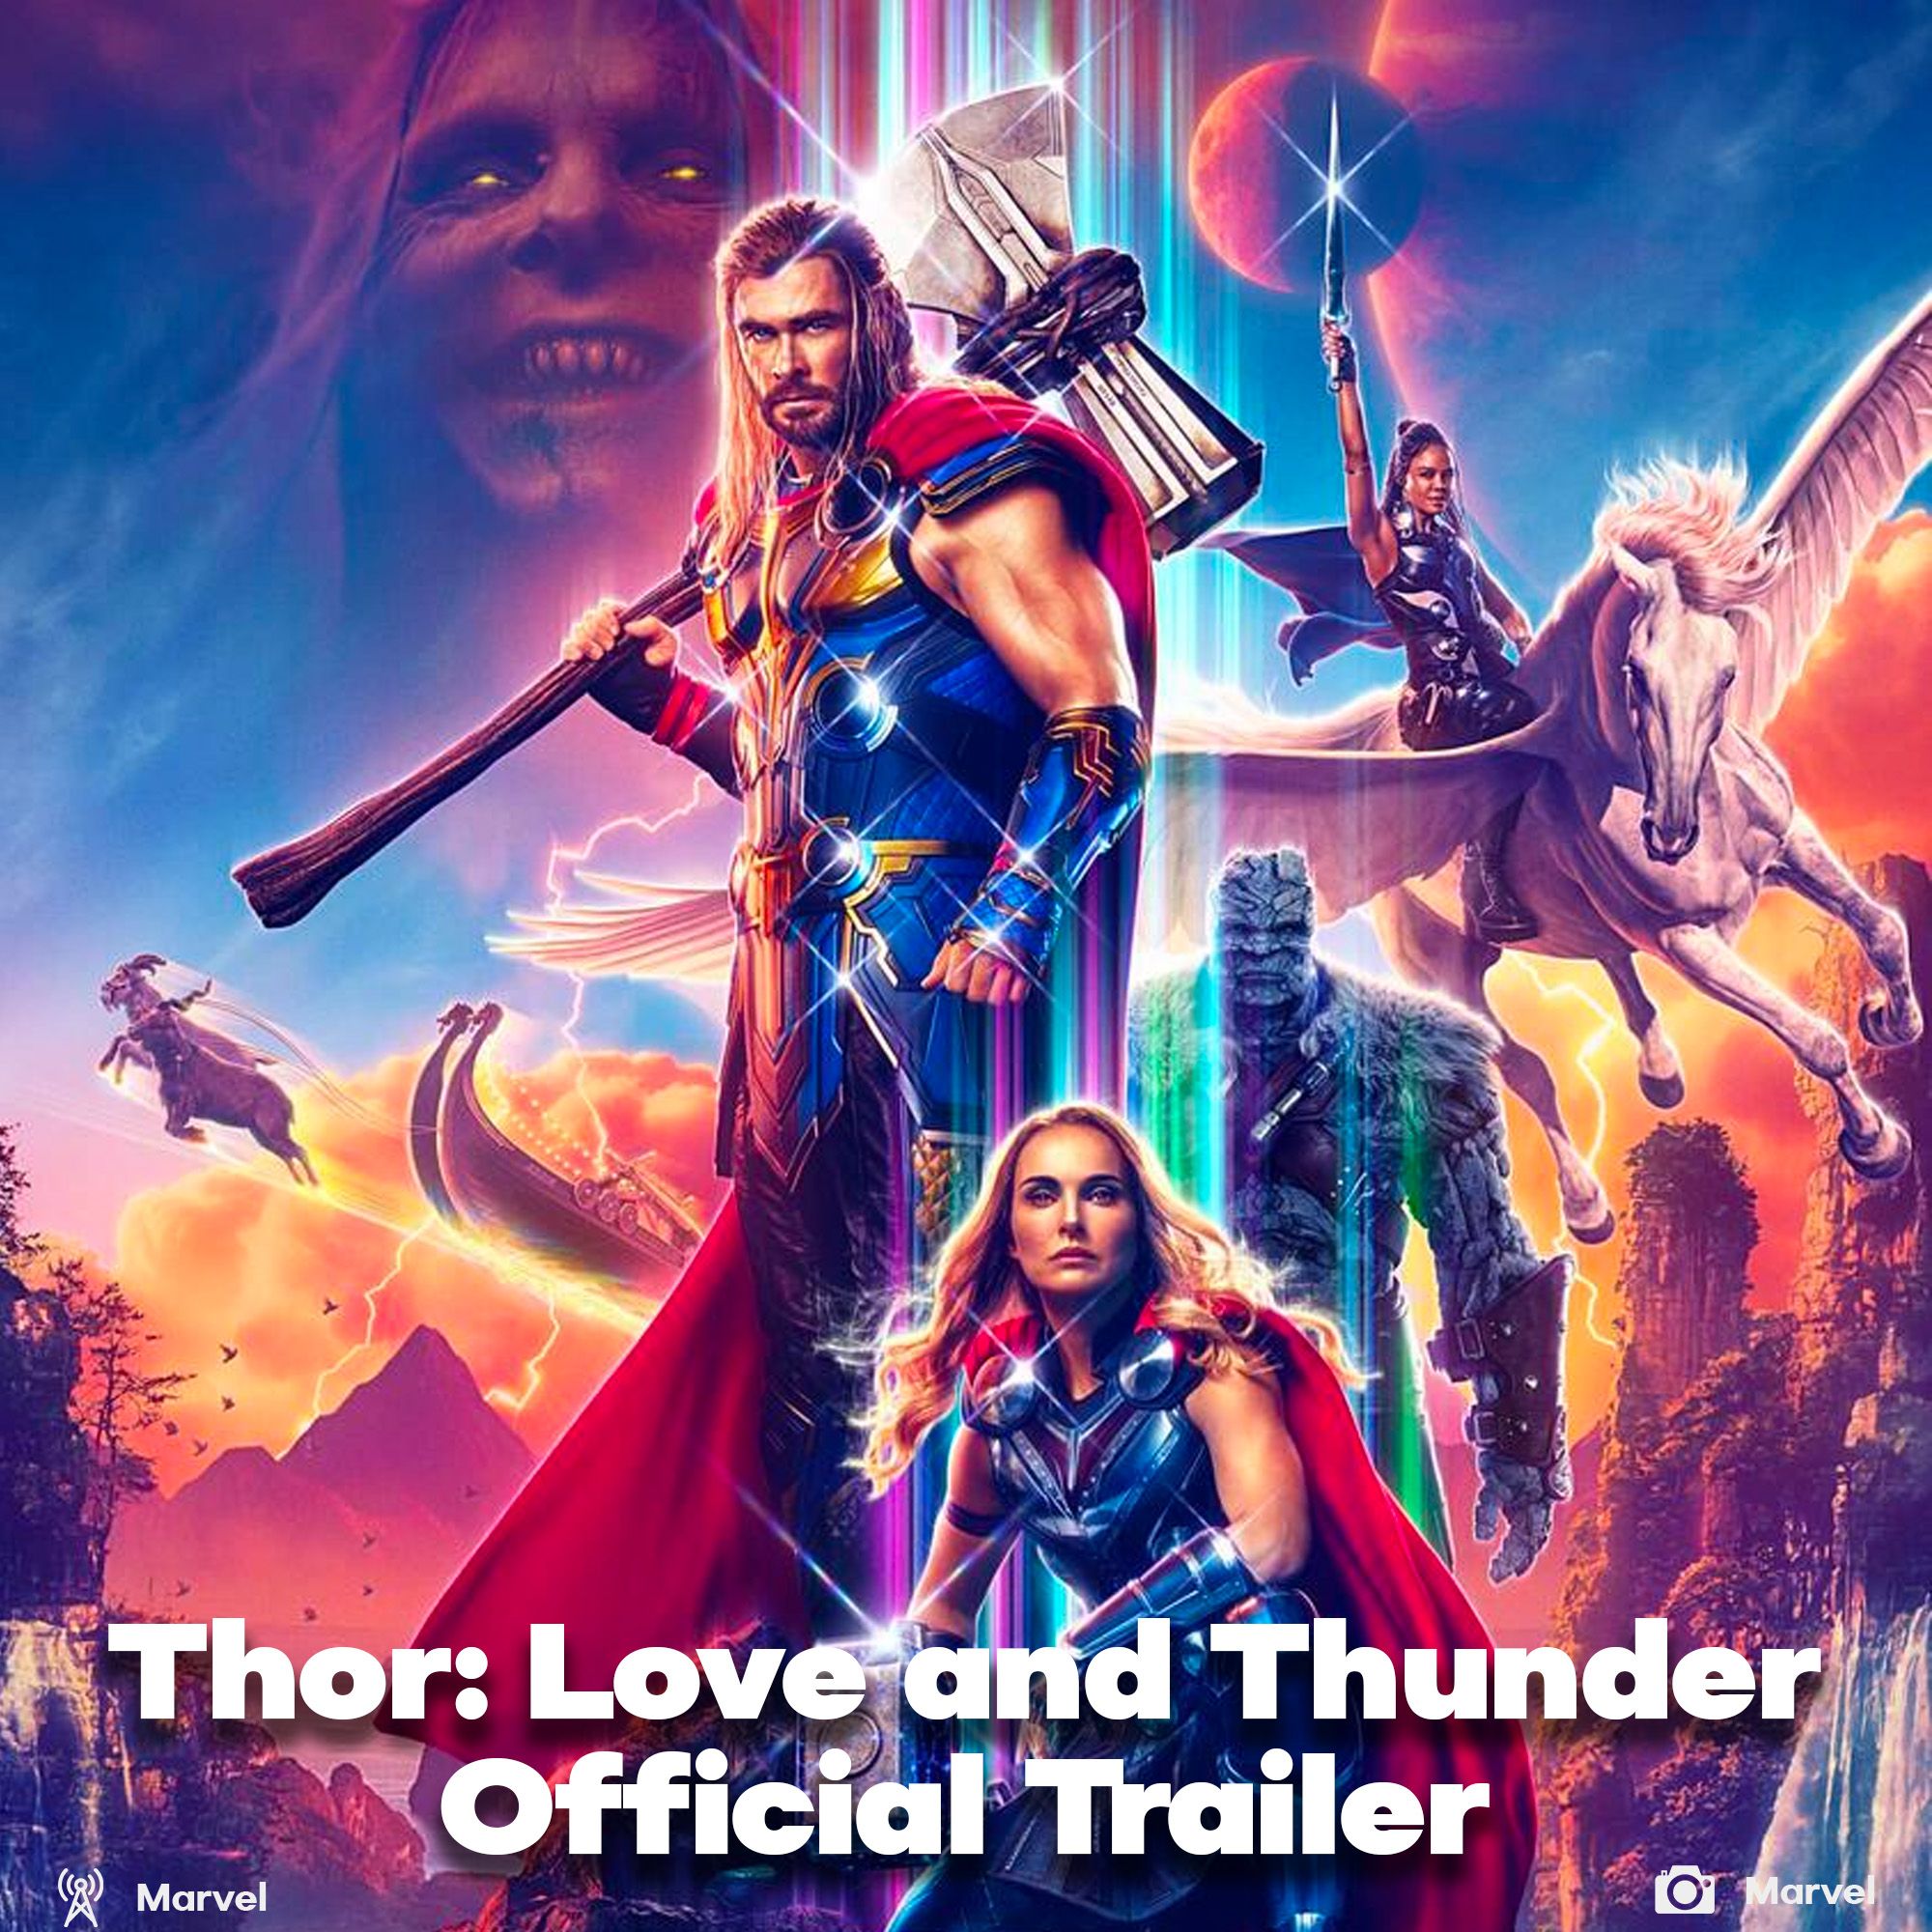 Thor love and thunder trailer reelased